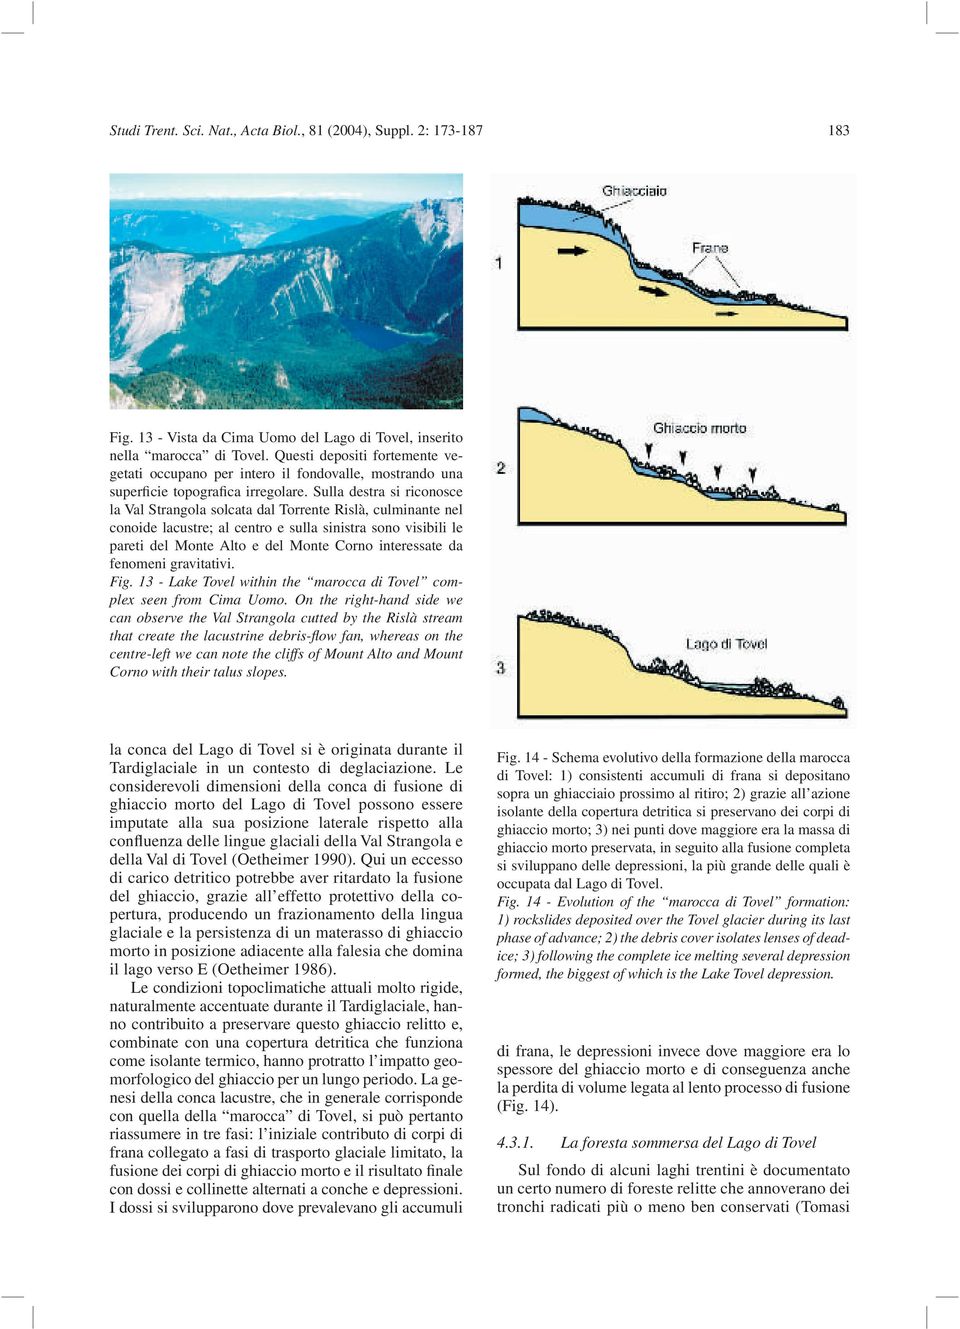 Sulla destra si riconosce la Val Strangola solcata dal Torrente Rislà, culminante nel conoide lacustre; al centro e sulla sinistra sono visibili le pareti del Monte Alto e del Monte Corno interessate